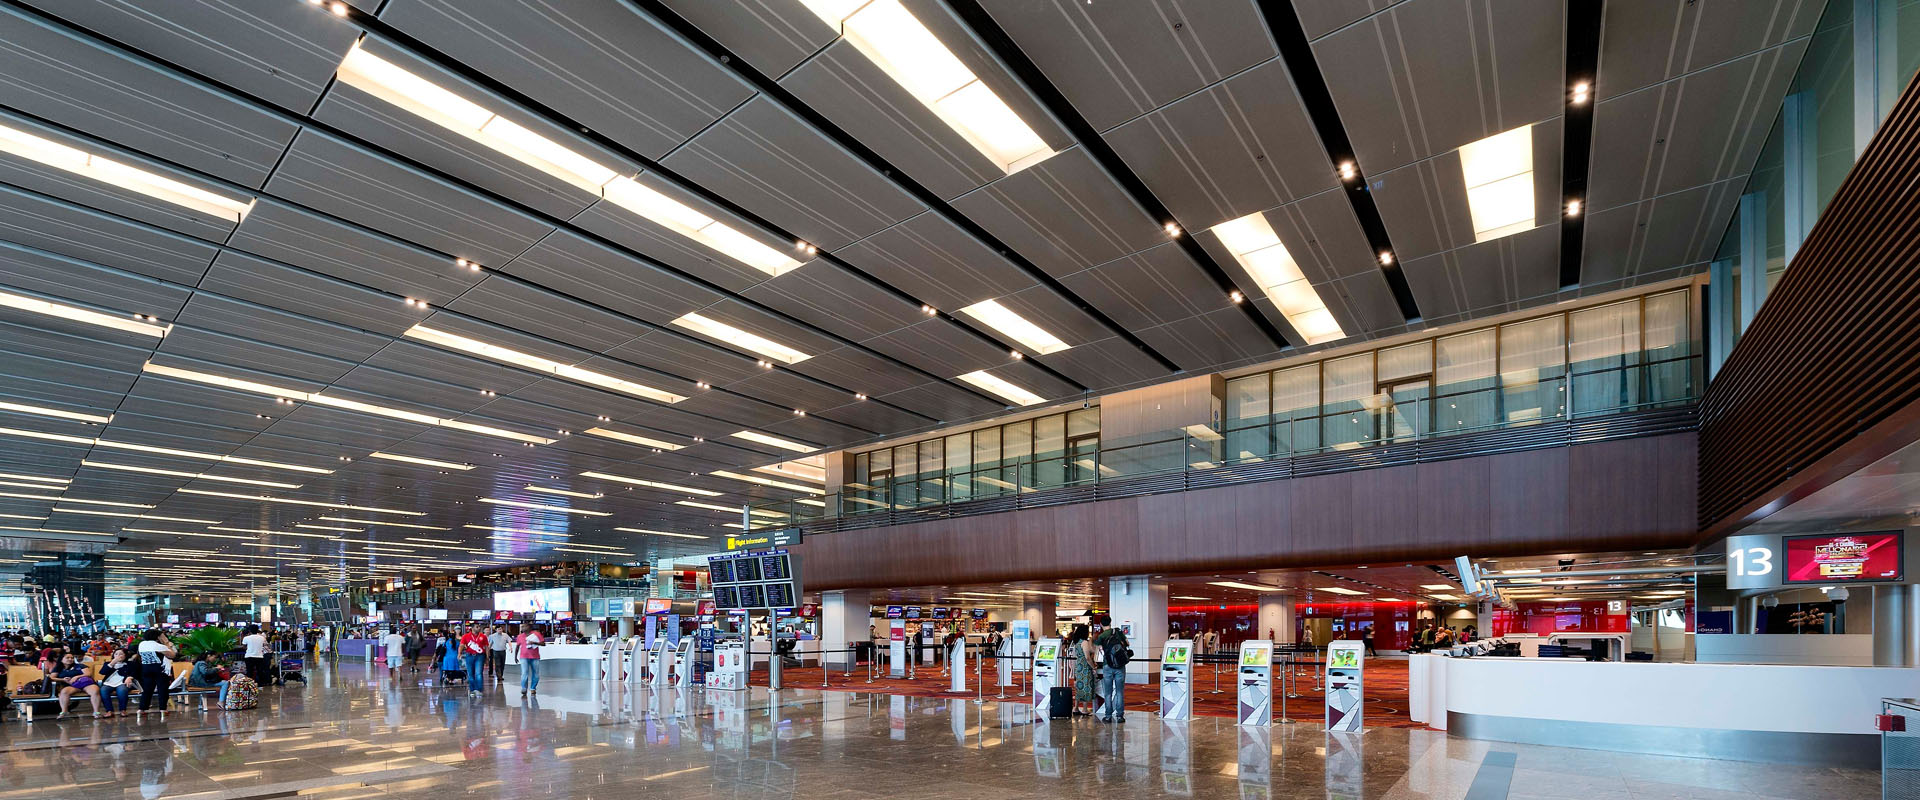 Changi International Airport Terminal 1 Expansion, Singapore